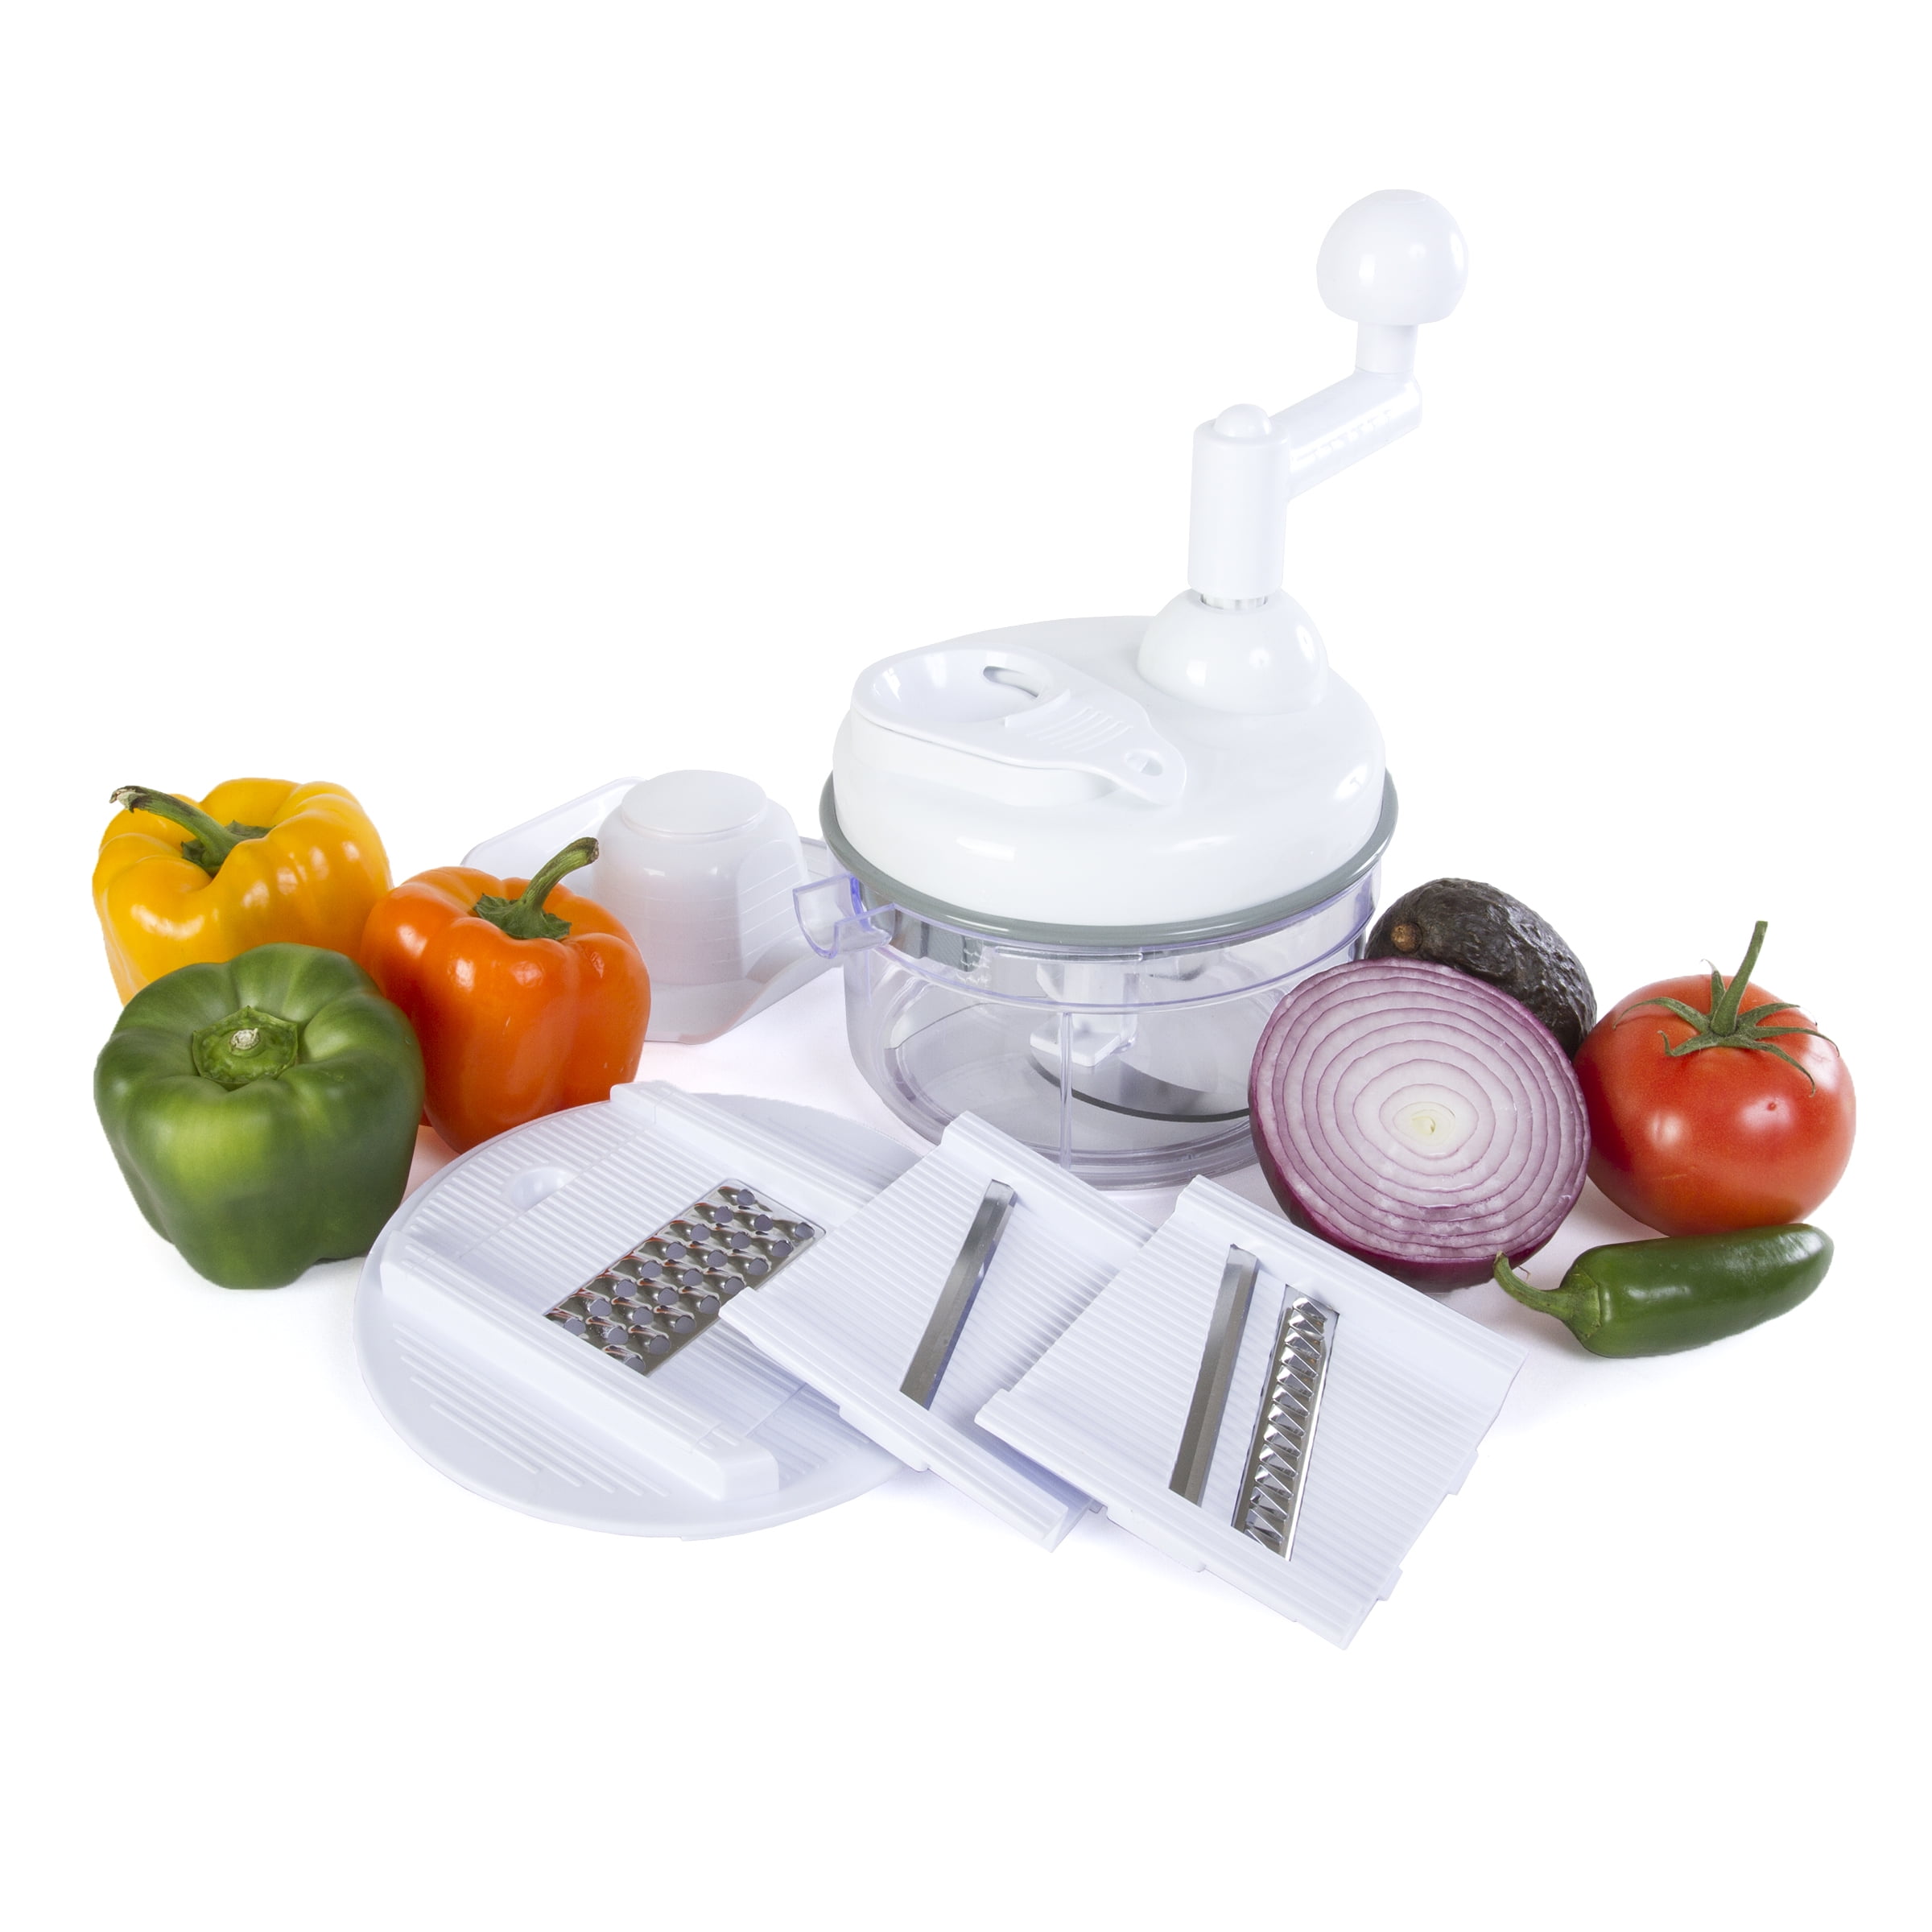 Chefdini - Salsa Maker and Food Processor, White